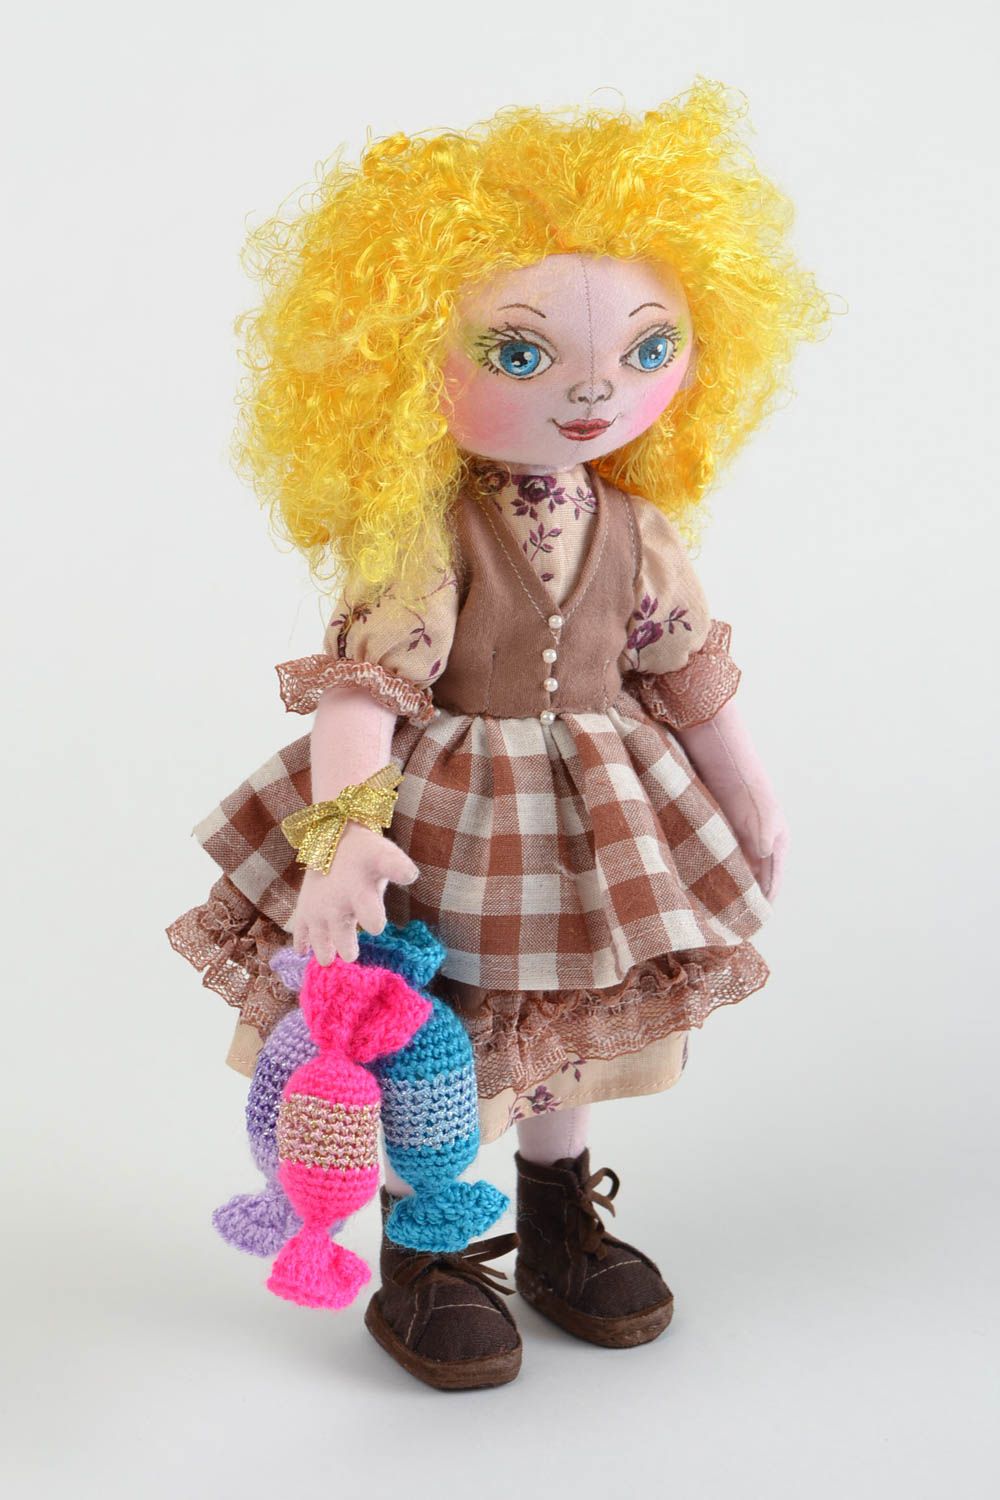 Кукла для интерьера и детей тканевая мягкая игрушка ручной работы Сладкоежка фото 2